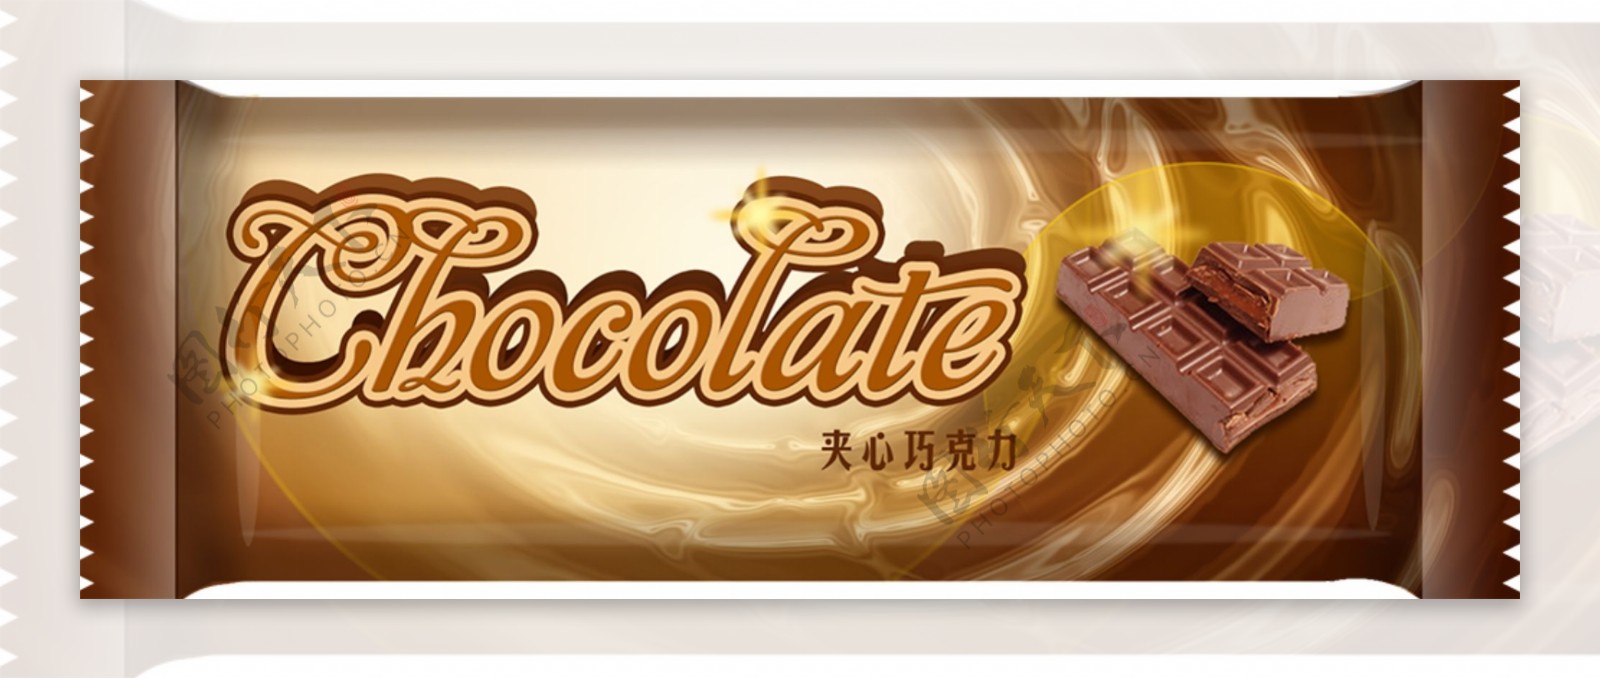 巧克力广告设计